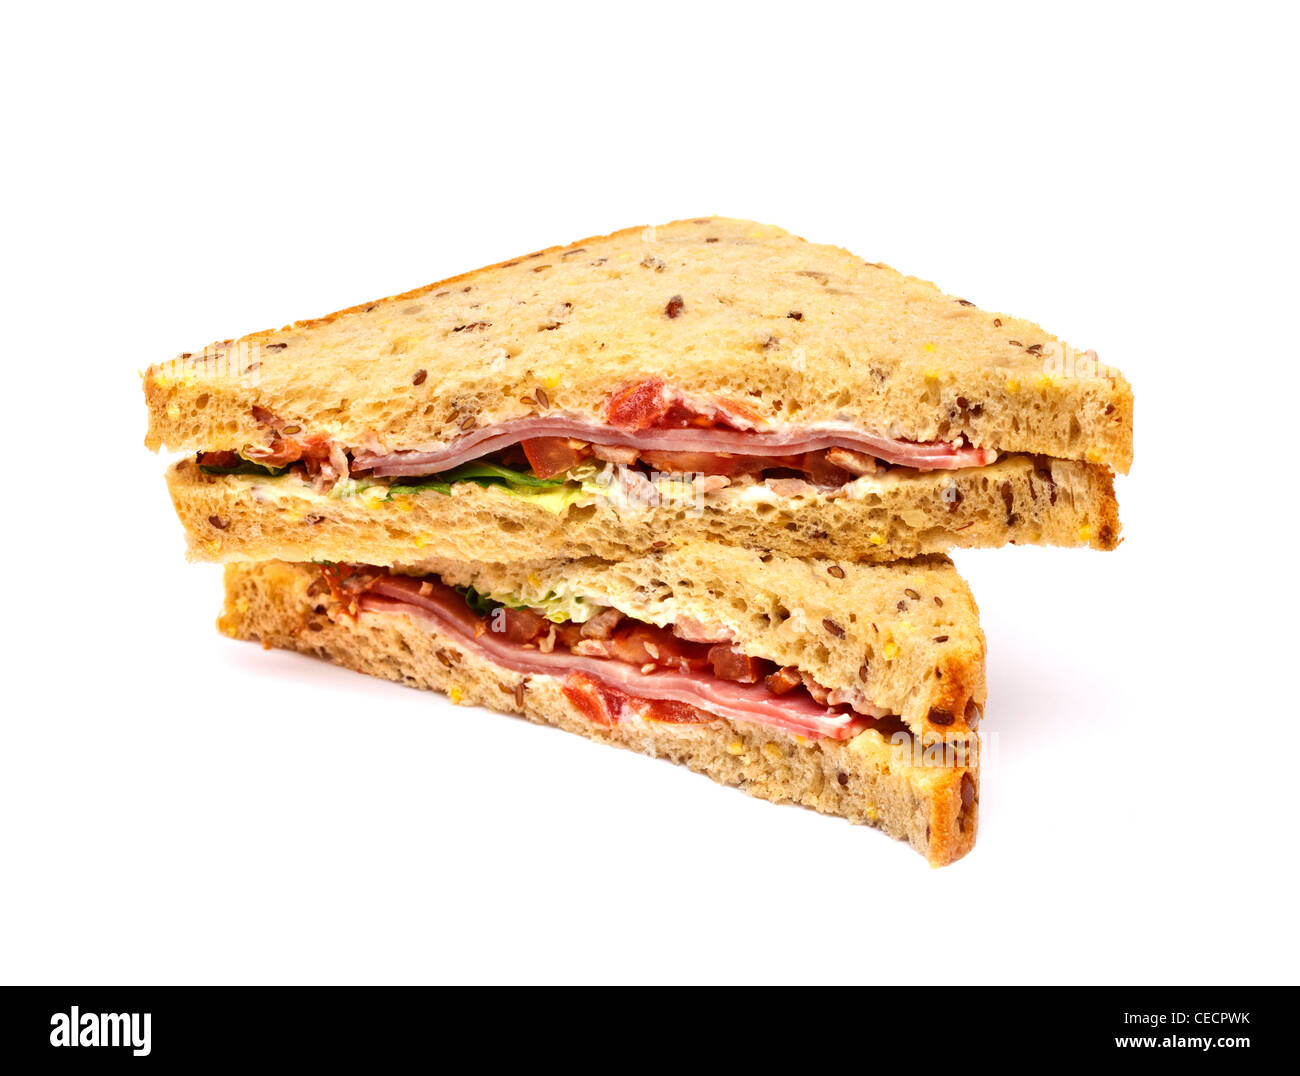 BLT - bacon, lechuga y tomate sandwich sobre fondo blanco. Foto de stock